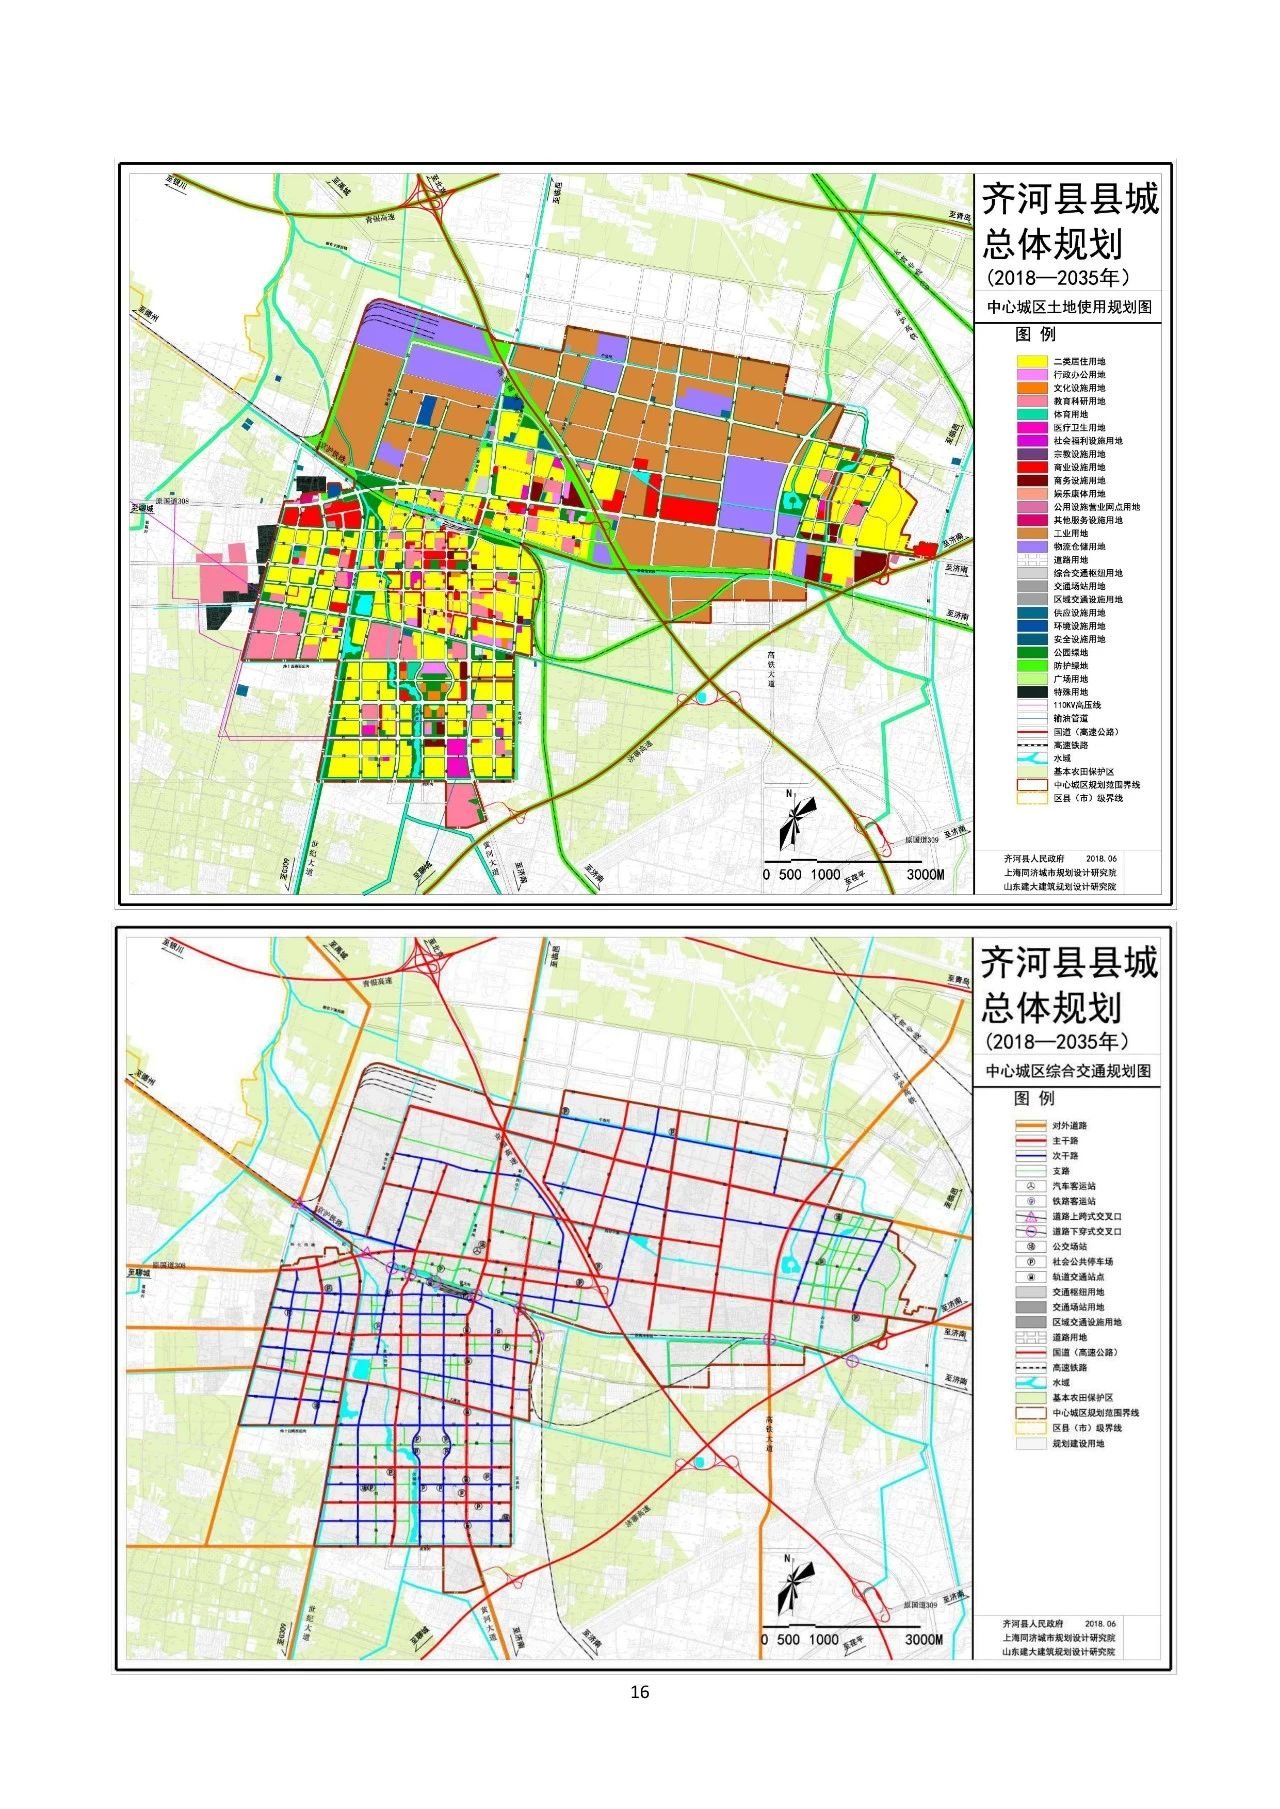 齐河县县城总体规划(2018-2035年)获省政府批复